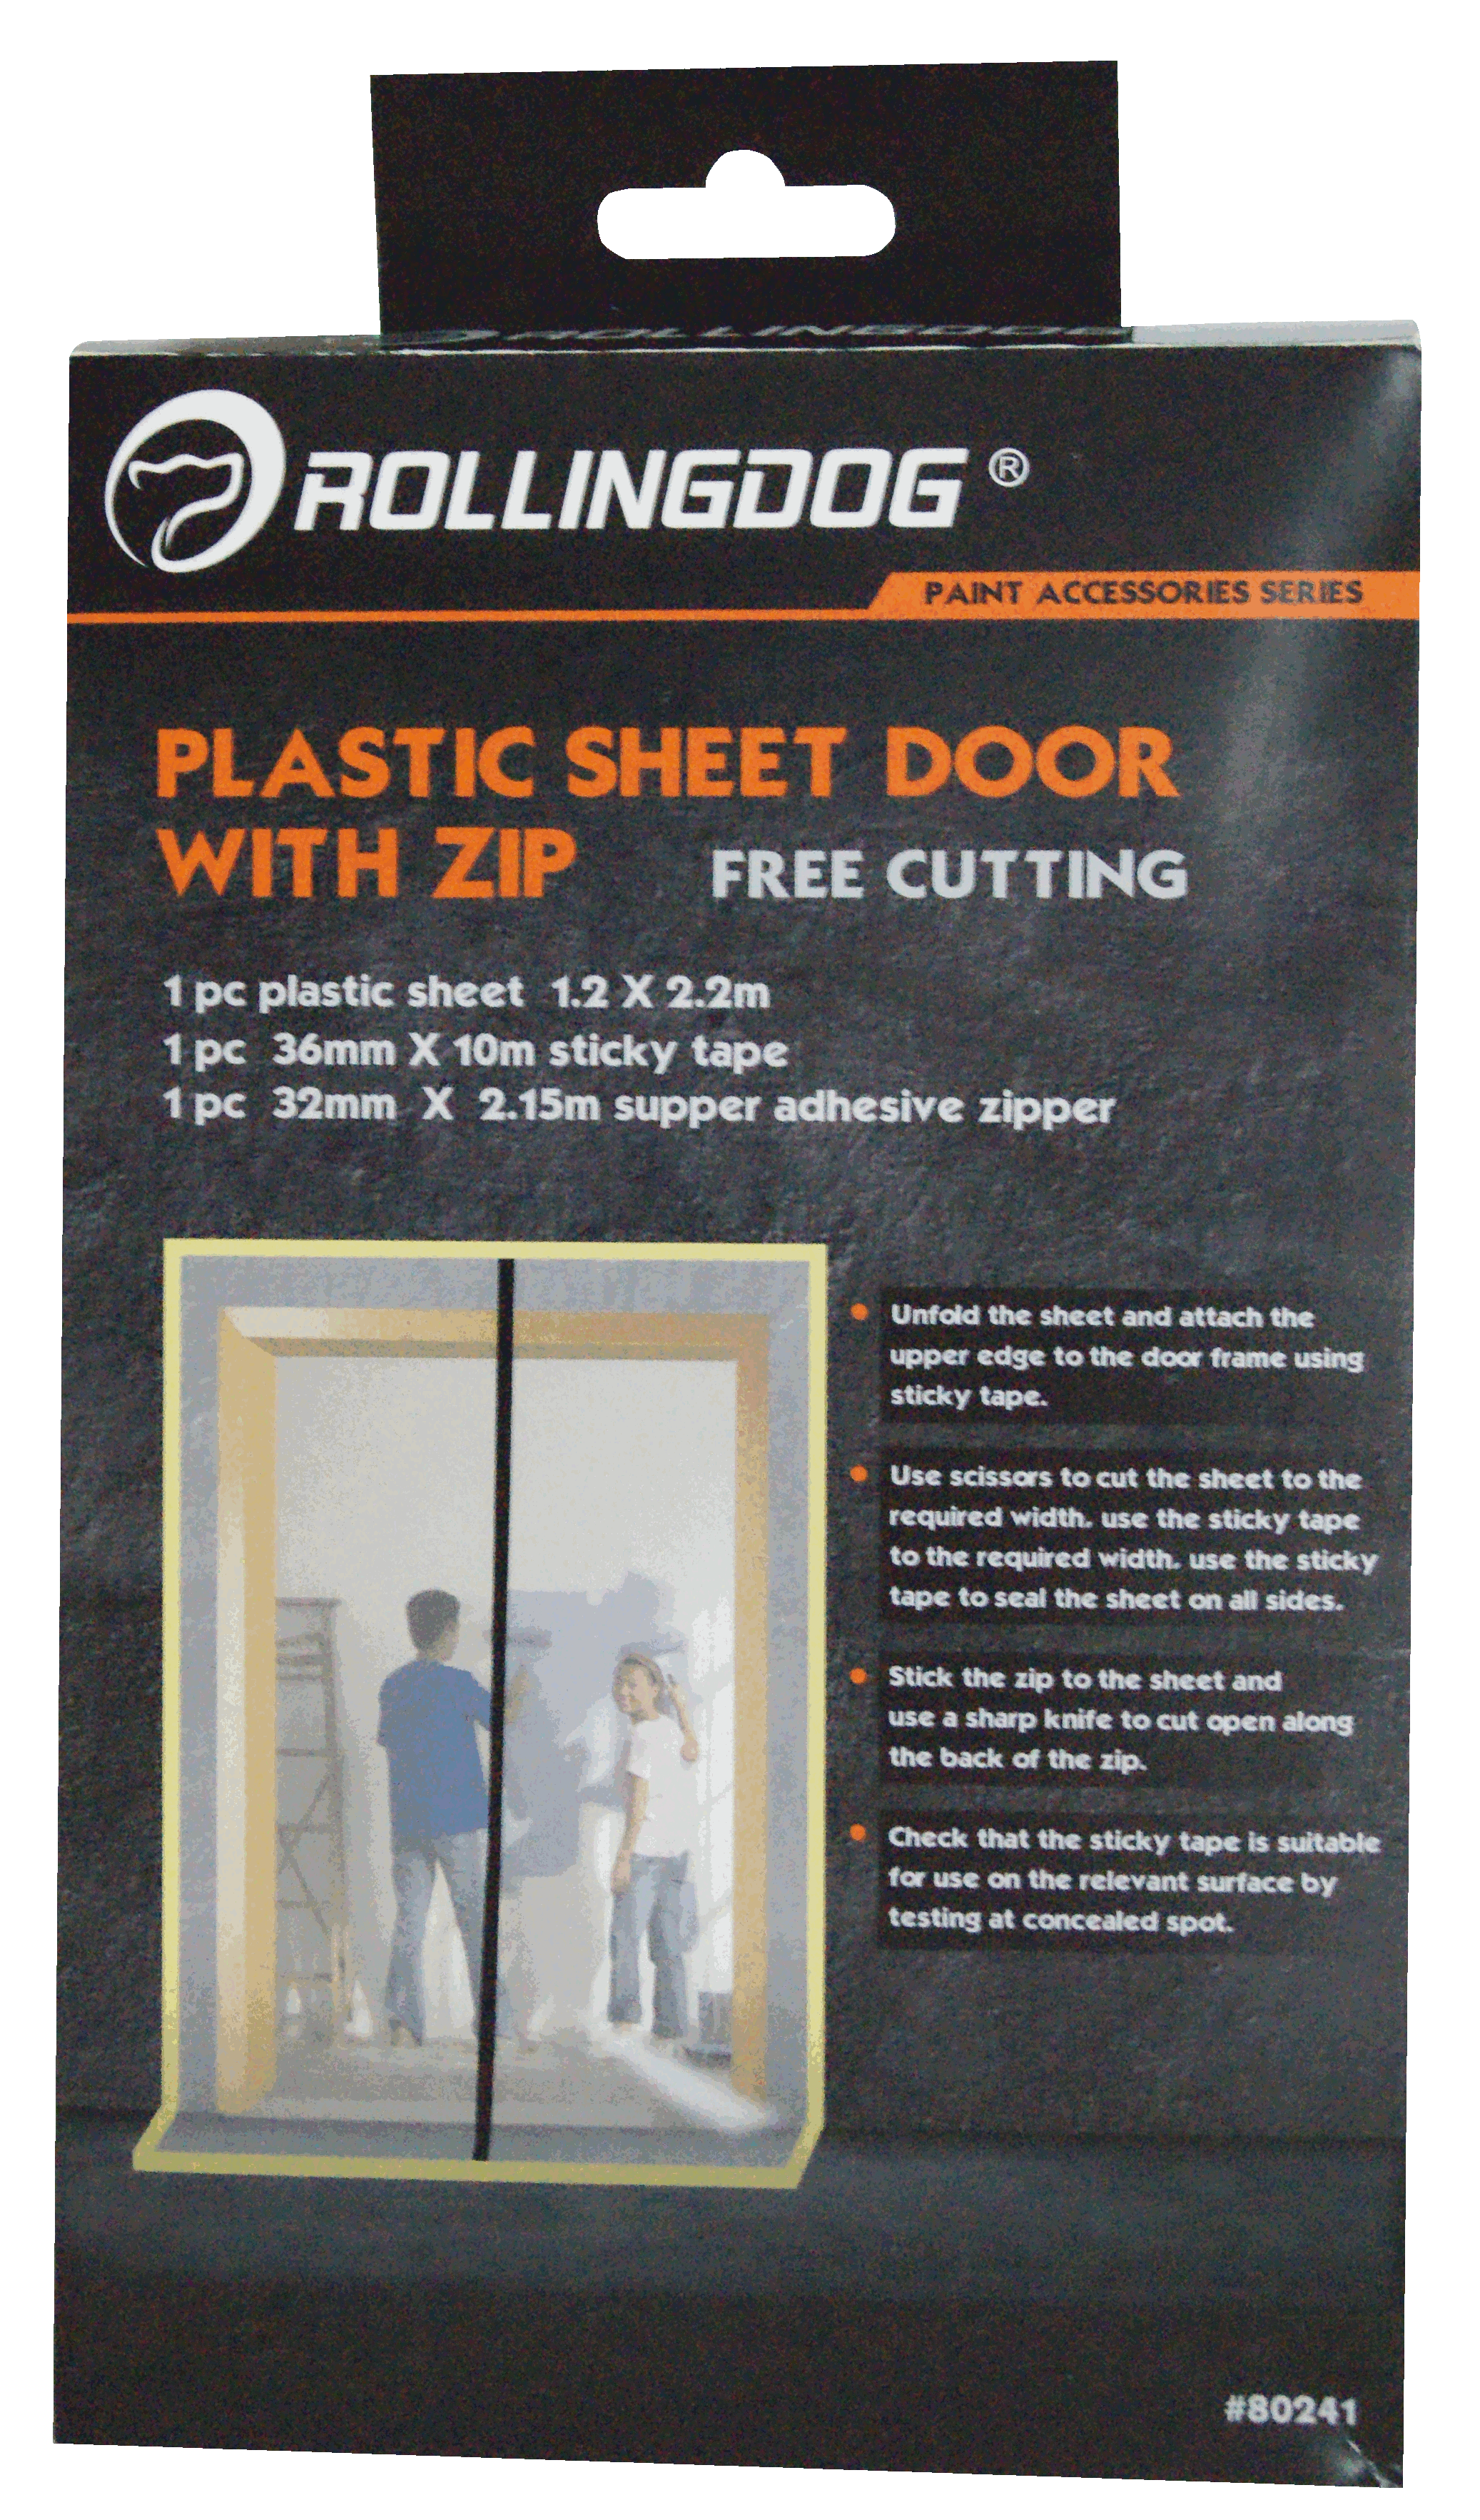 Plastic Sheet Door With Zip                                                                                                                                                                             